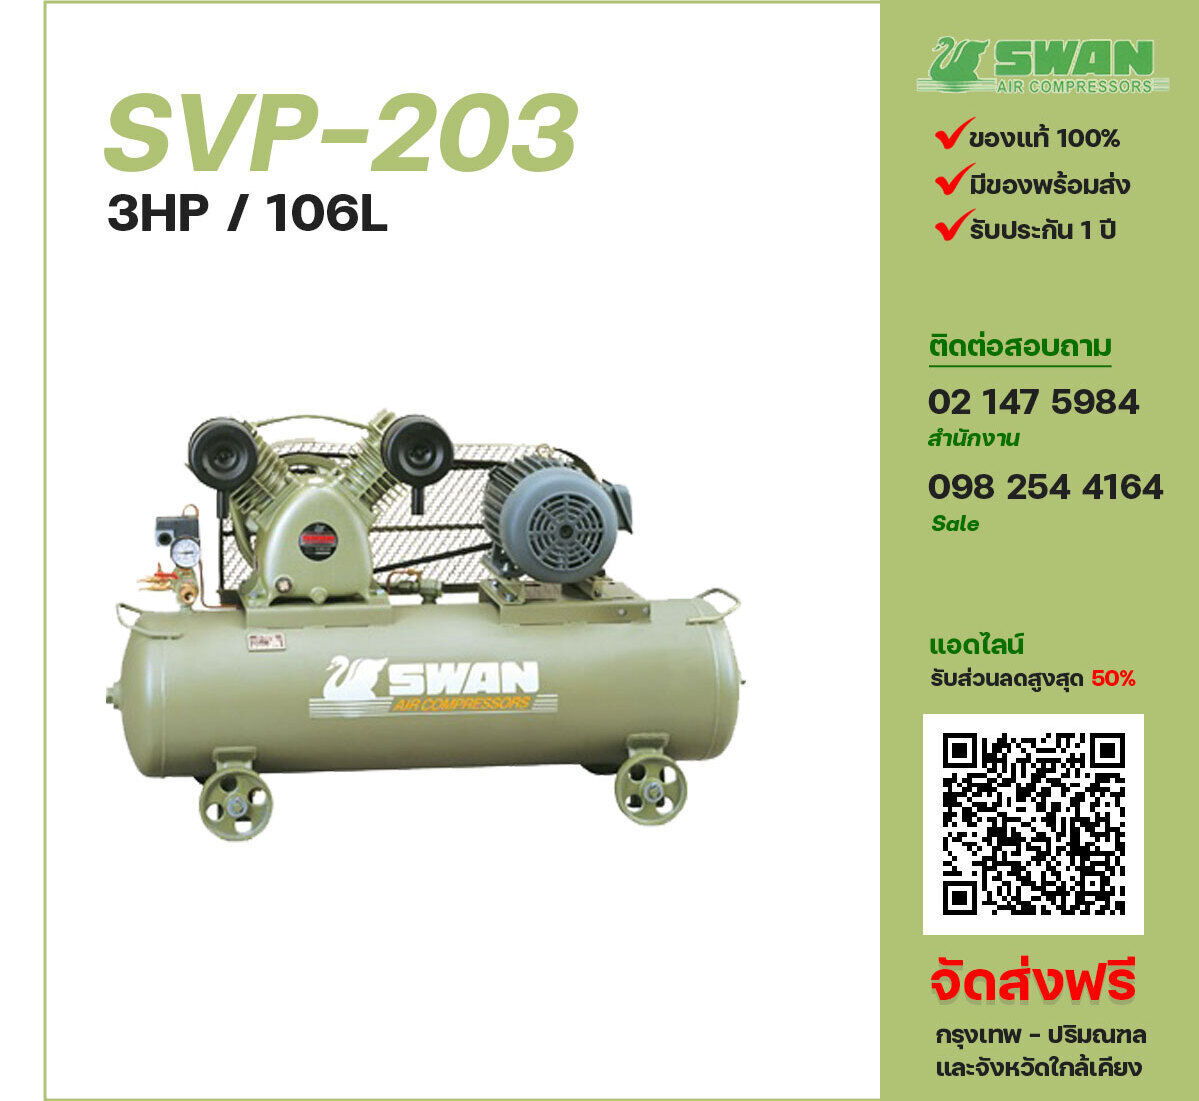 ปั๊มลมสวอน SWAN SVP-203 220V/380V ปั๊มลมลูกสูบ ขนาด 2 สูบ 3 แรงม้า 106 ลิตร SWAN พร้อมมอเตอร์ ไฟ 220V/380V ส่งฟรี กรุงเทพฯ-ปริมณฑล รับประกัน 1 ปี